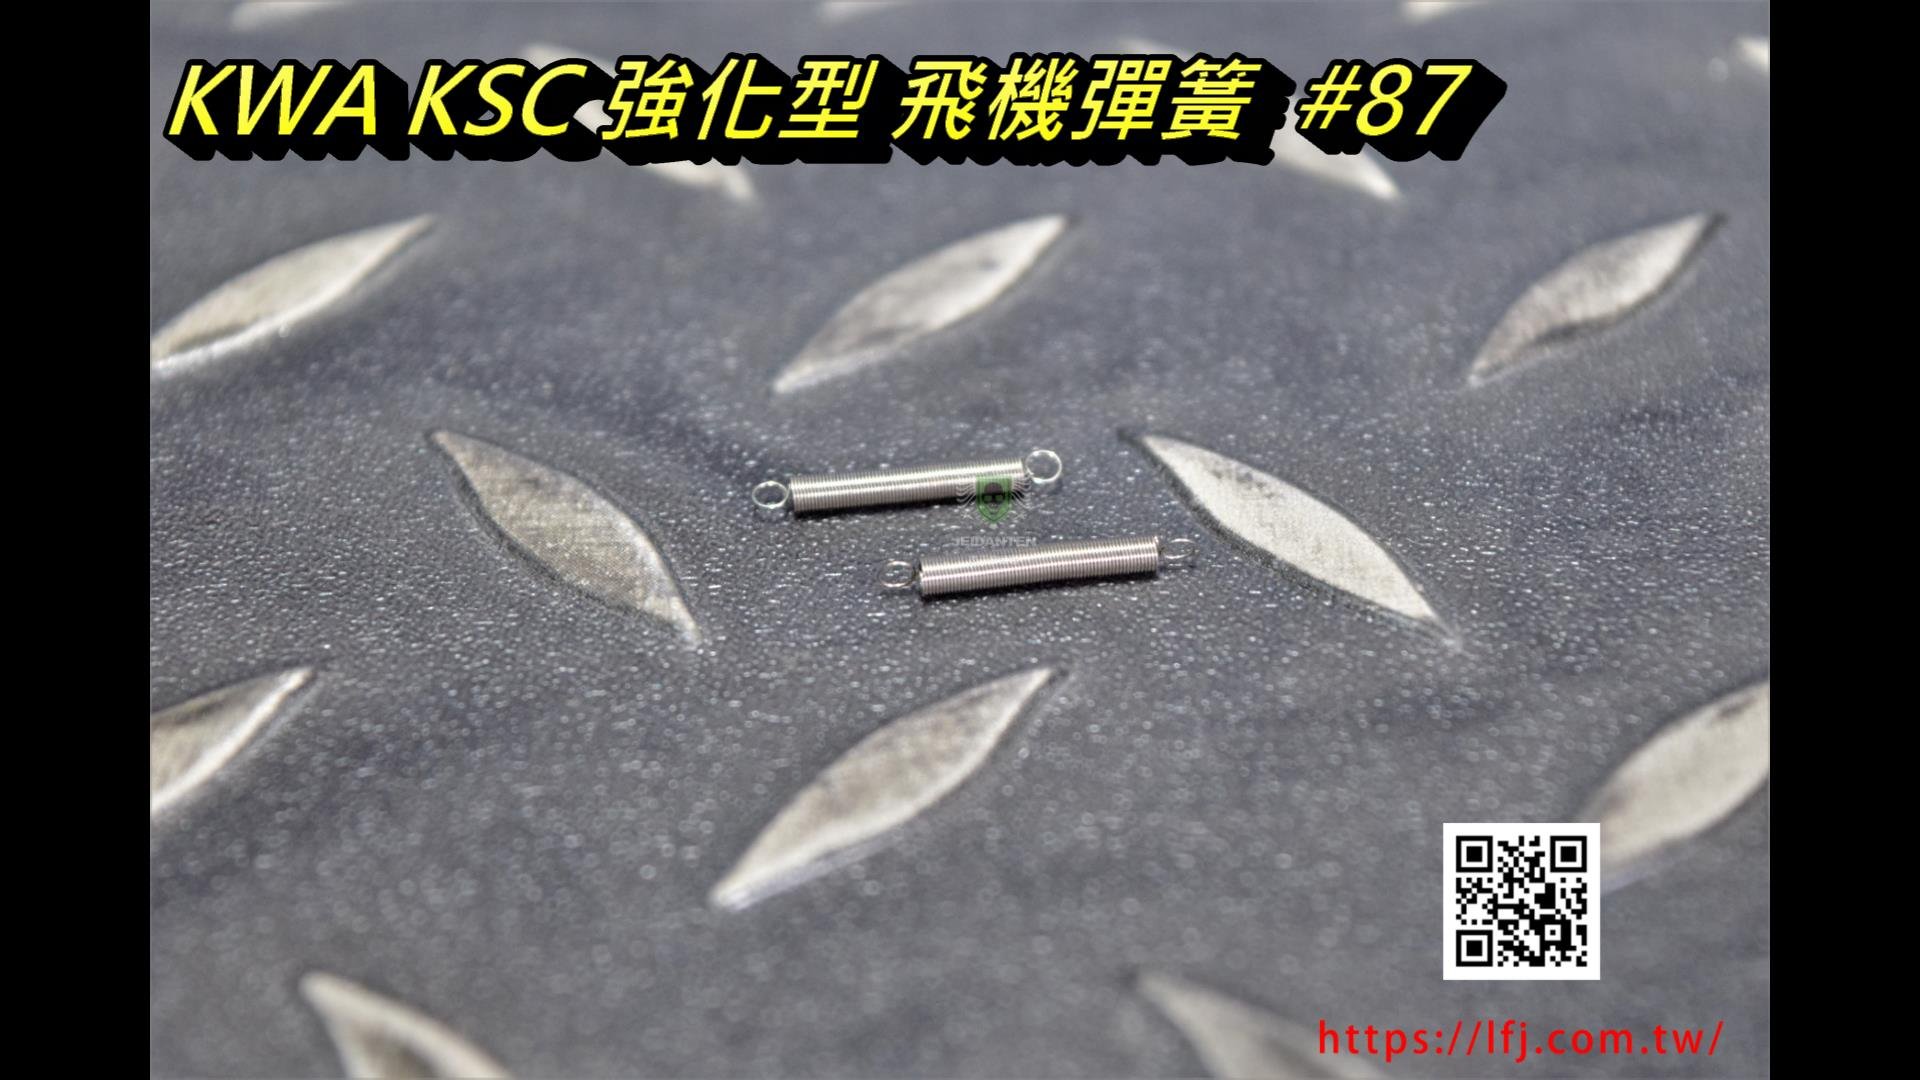 KSC KWA MP9 #87 1911 #79 TP9、M11、HK45、USP全部型號丶P226丶M9丶 